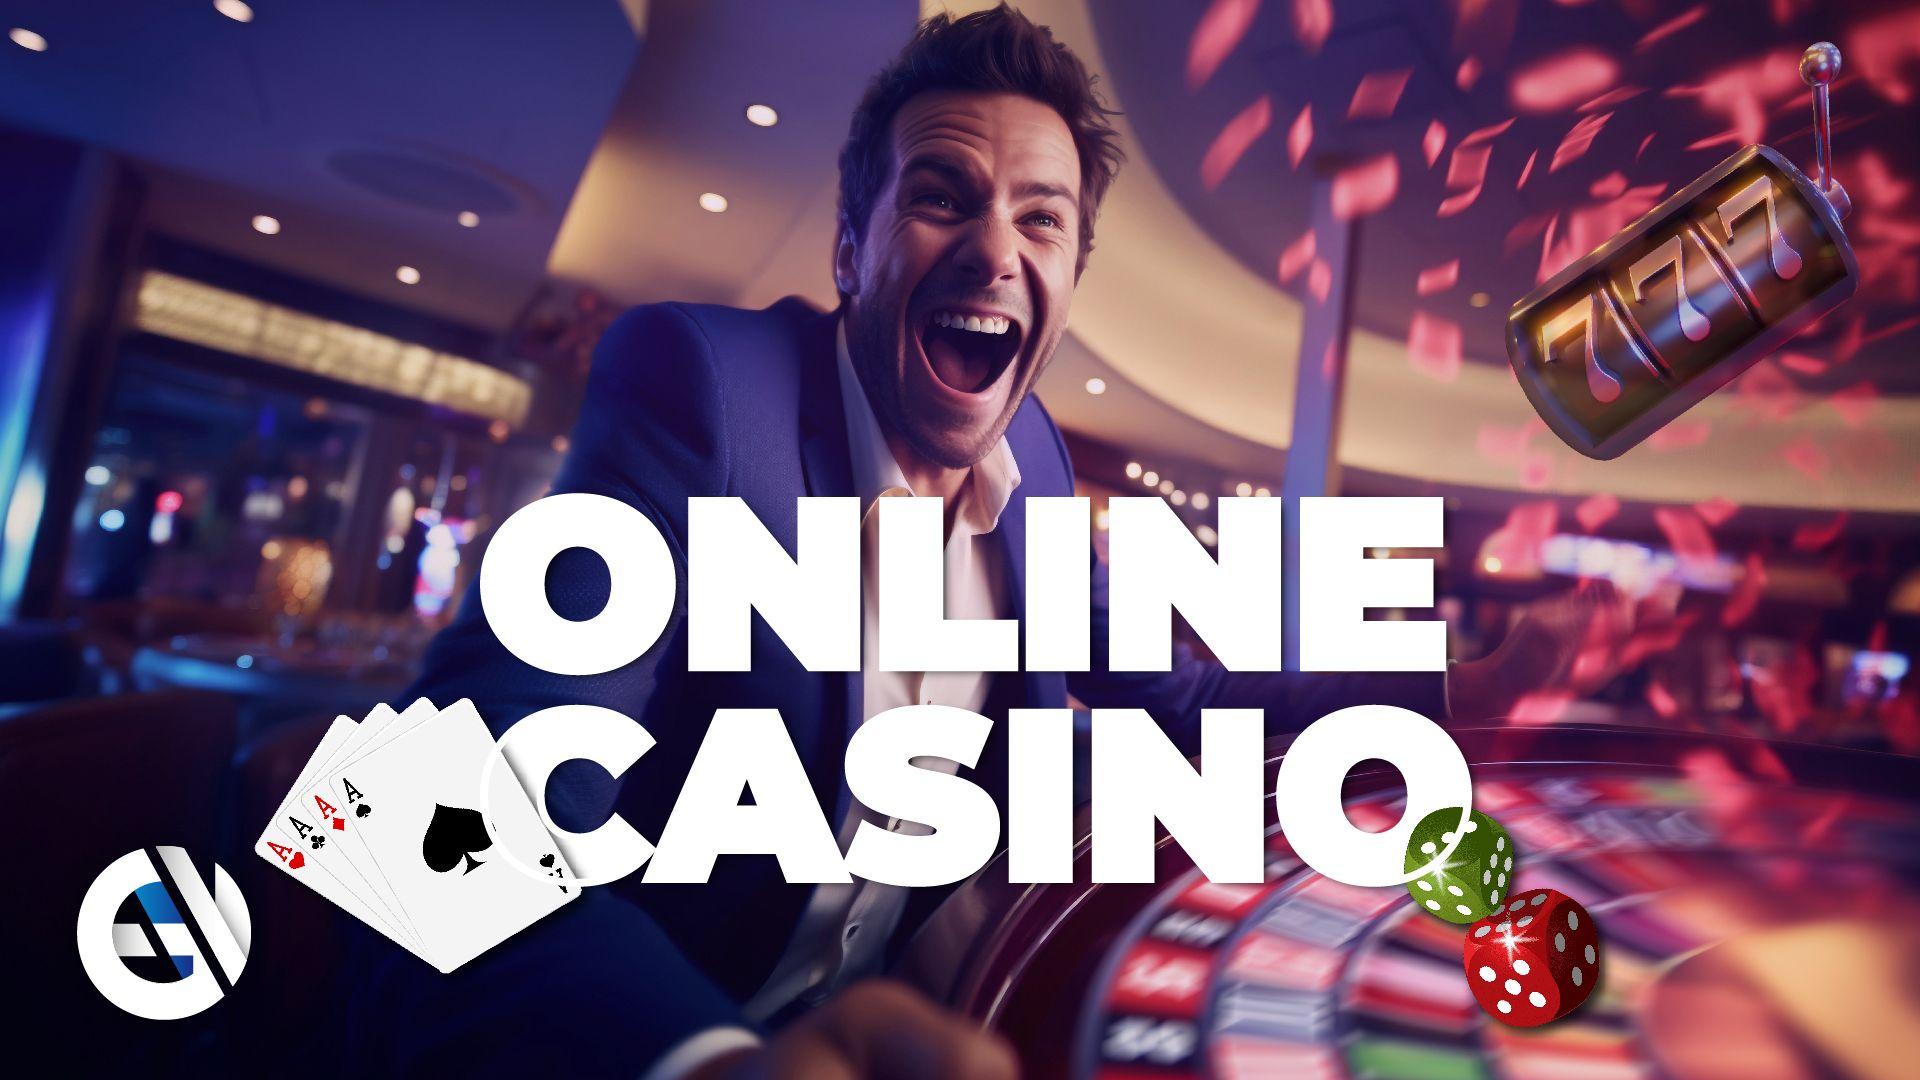 Как найти и выбрать одно из последних онлайн-казино - самые важные вещи, которые нужно проверить перед игрой